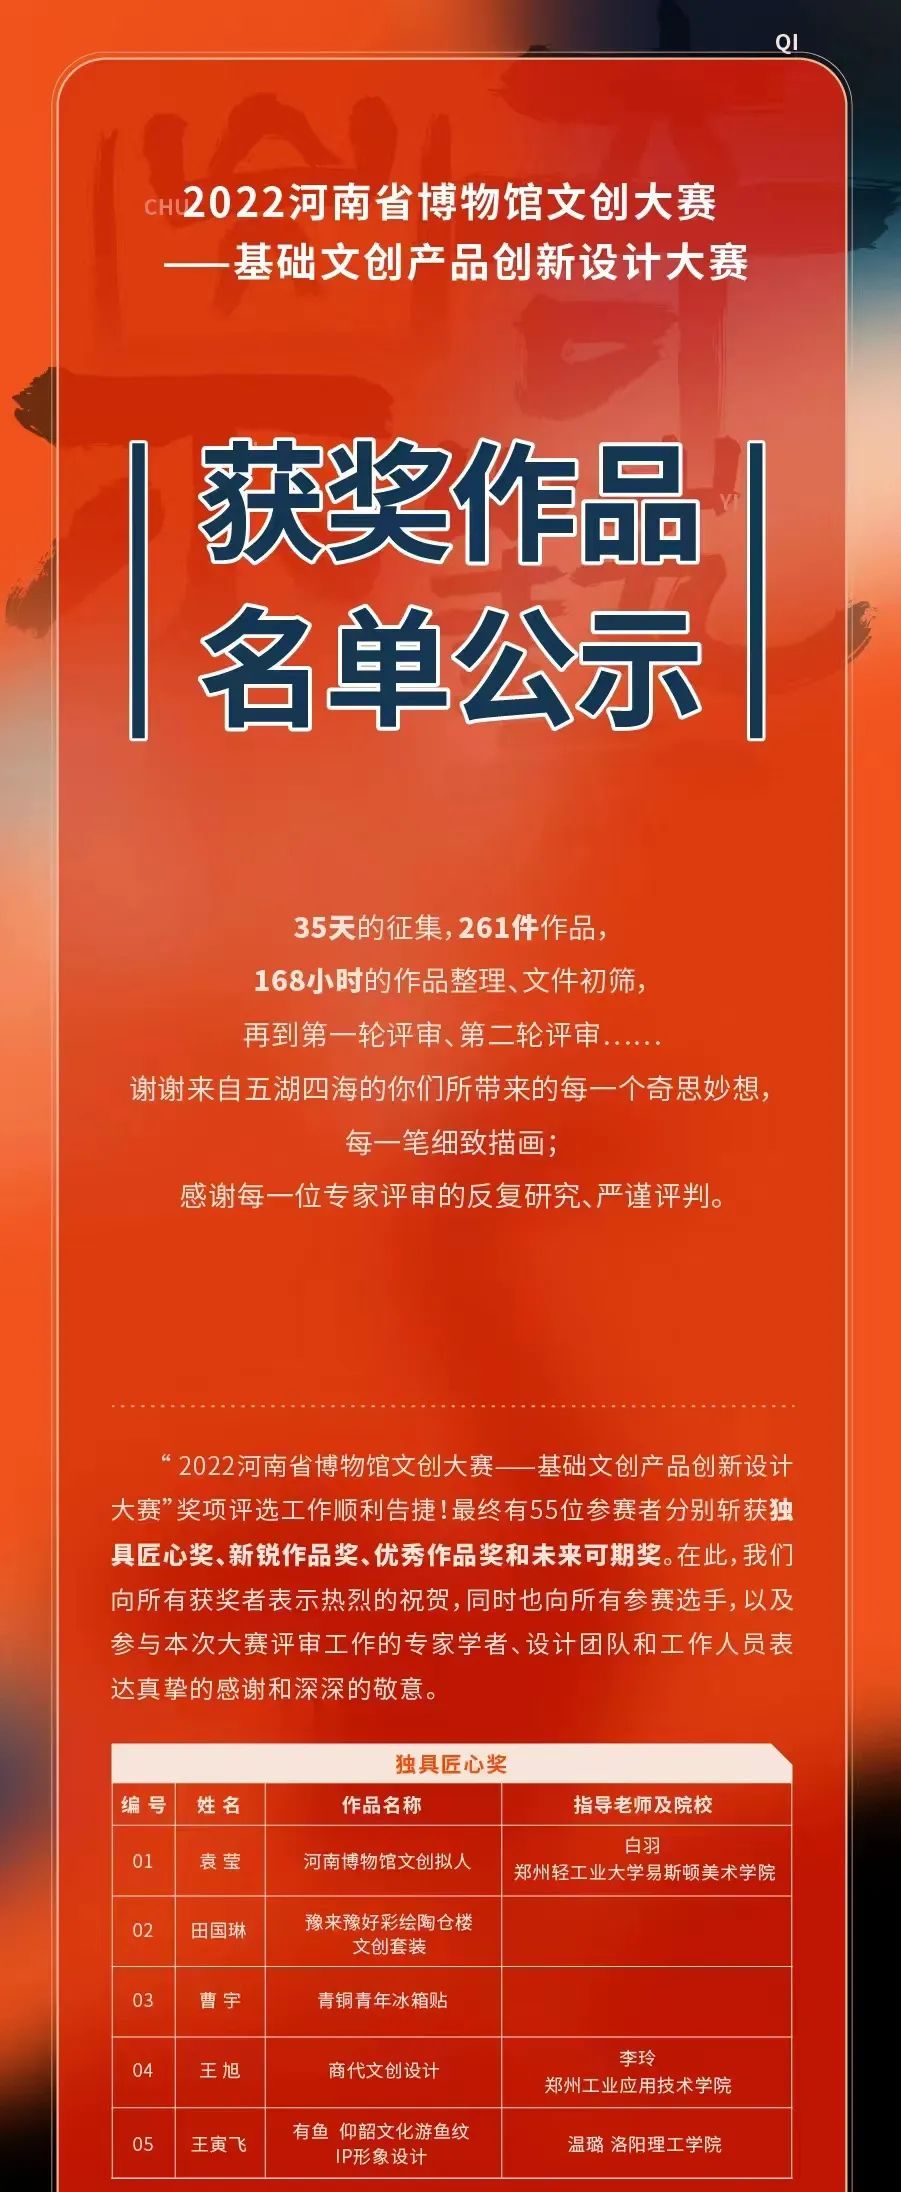 2022河南省博物馆文创大赛获奖作品名单公示